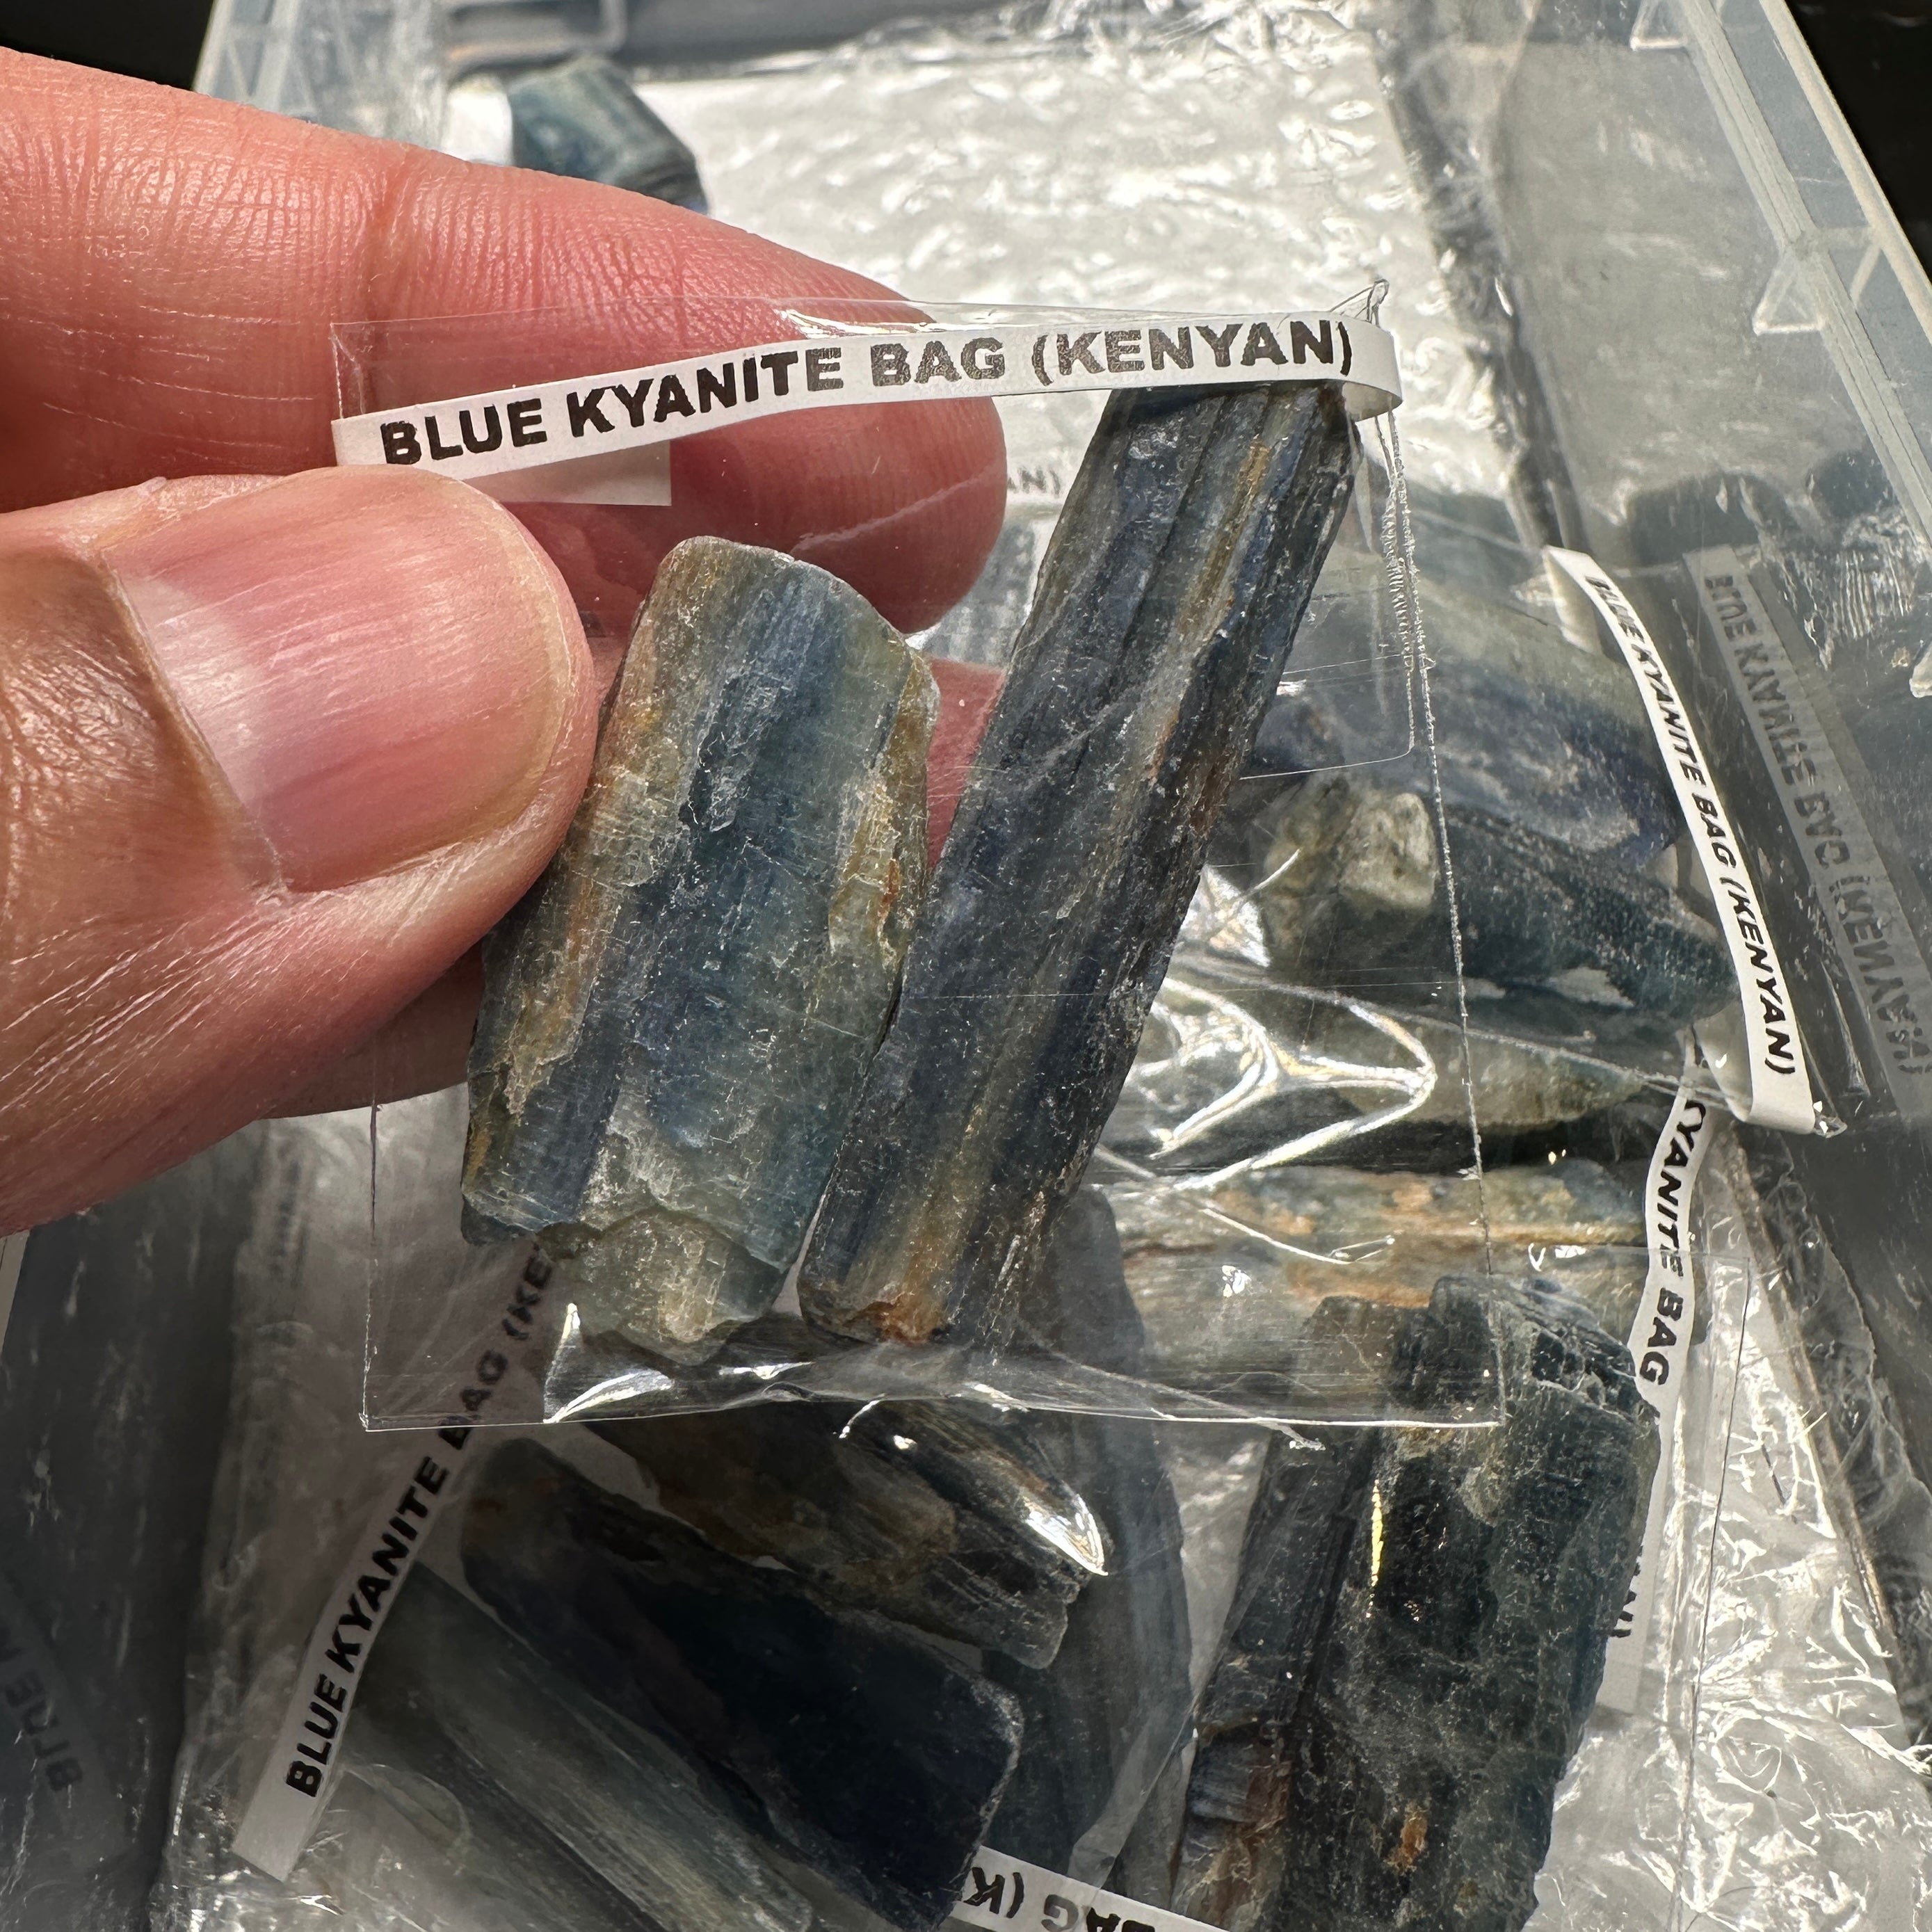 Blue Kyanite Bag, Kenyan